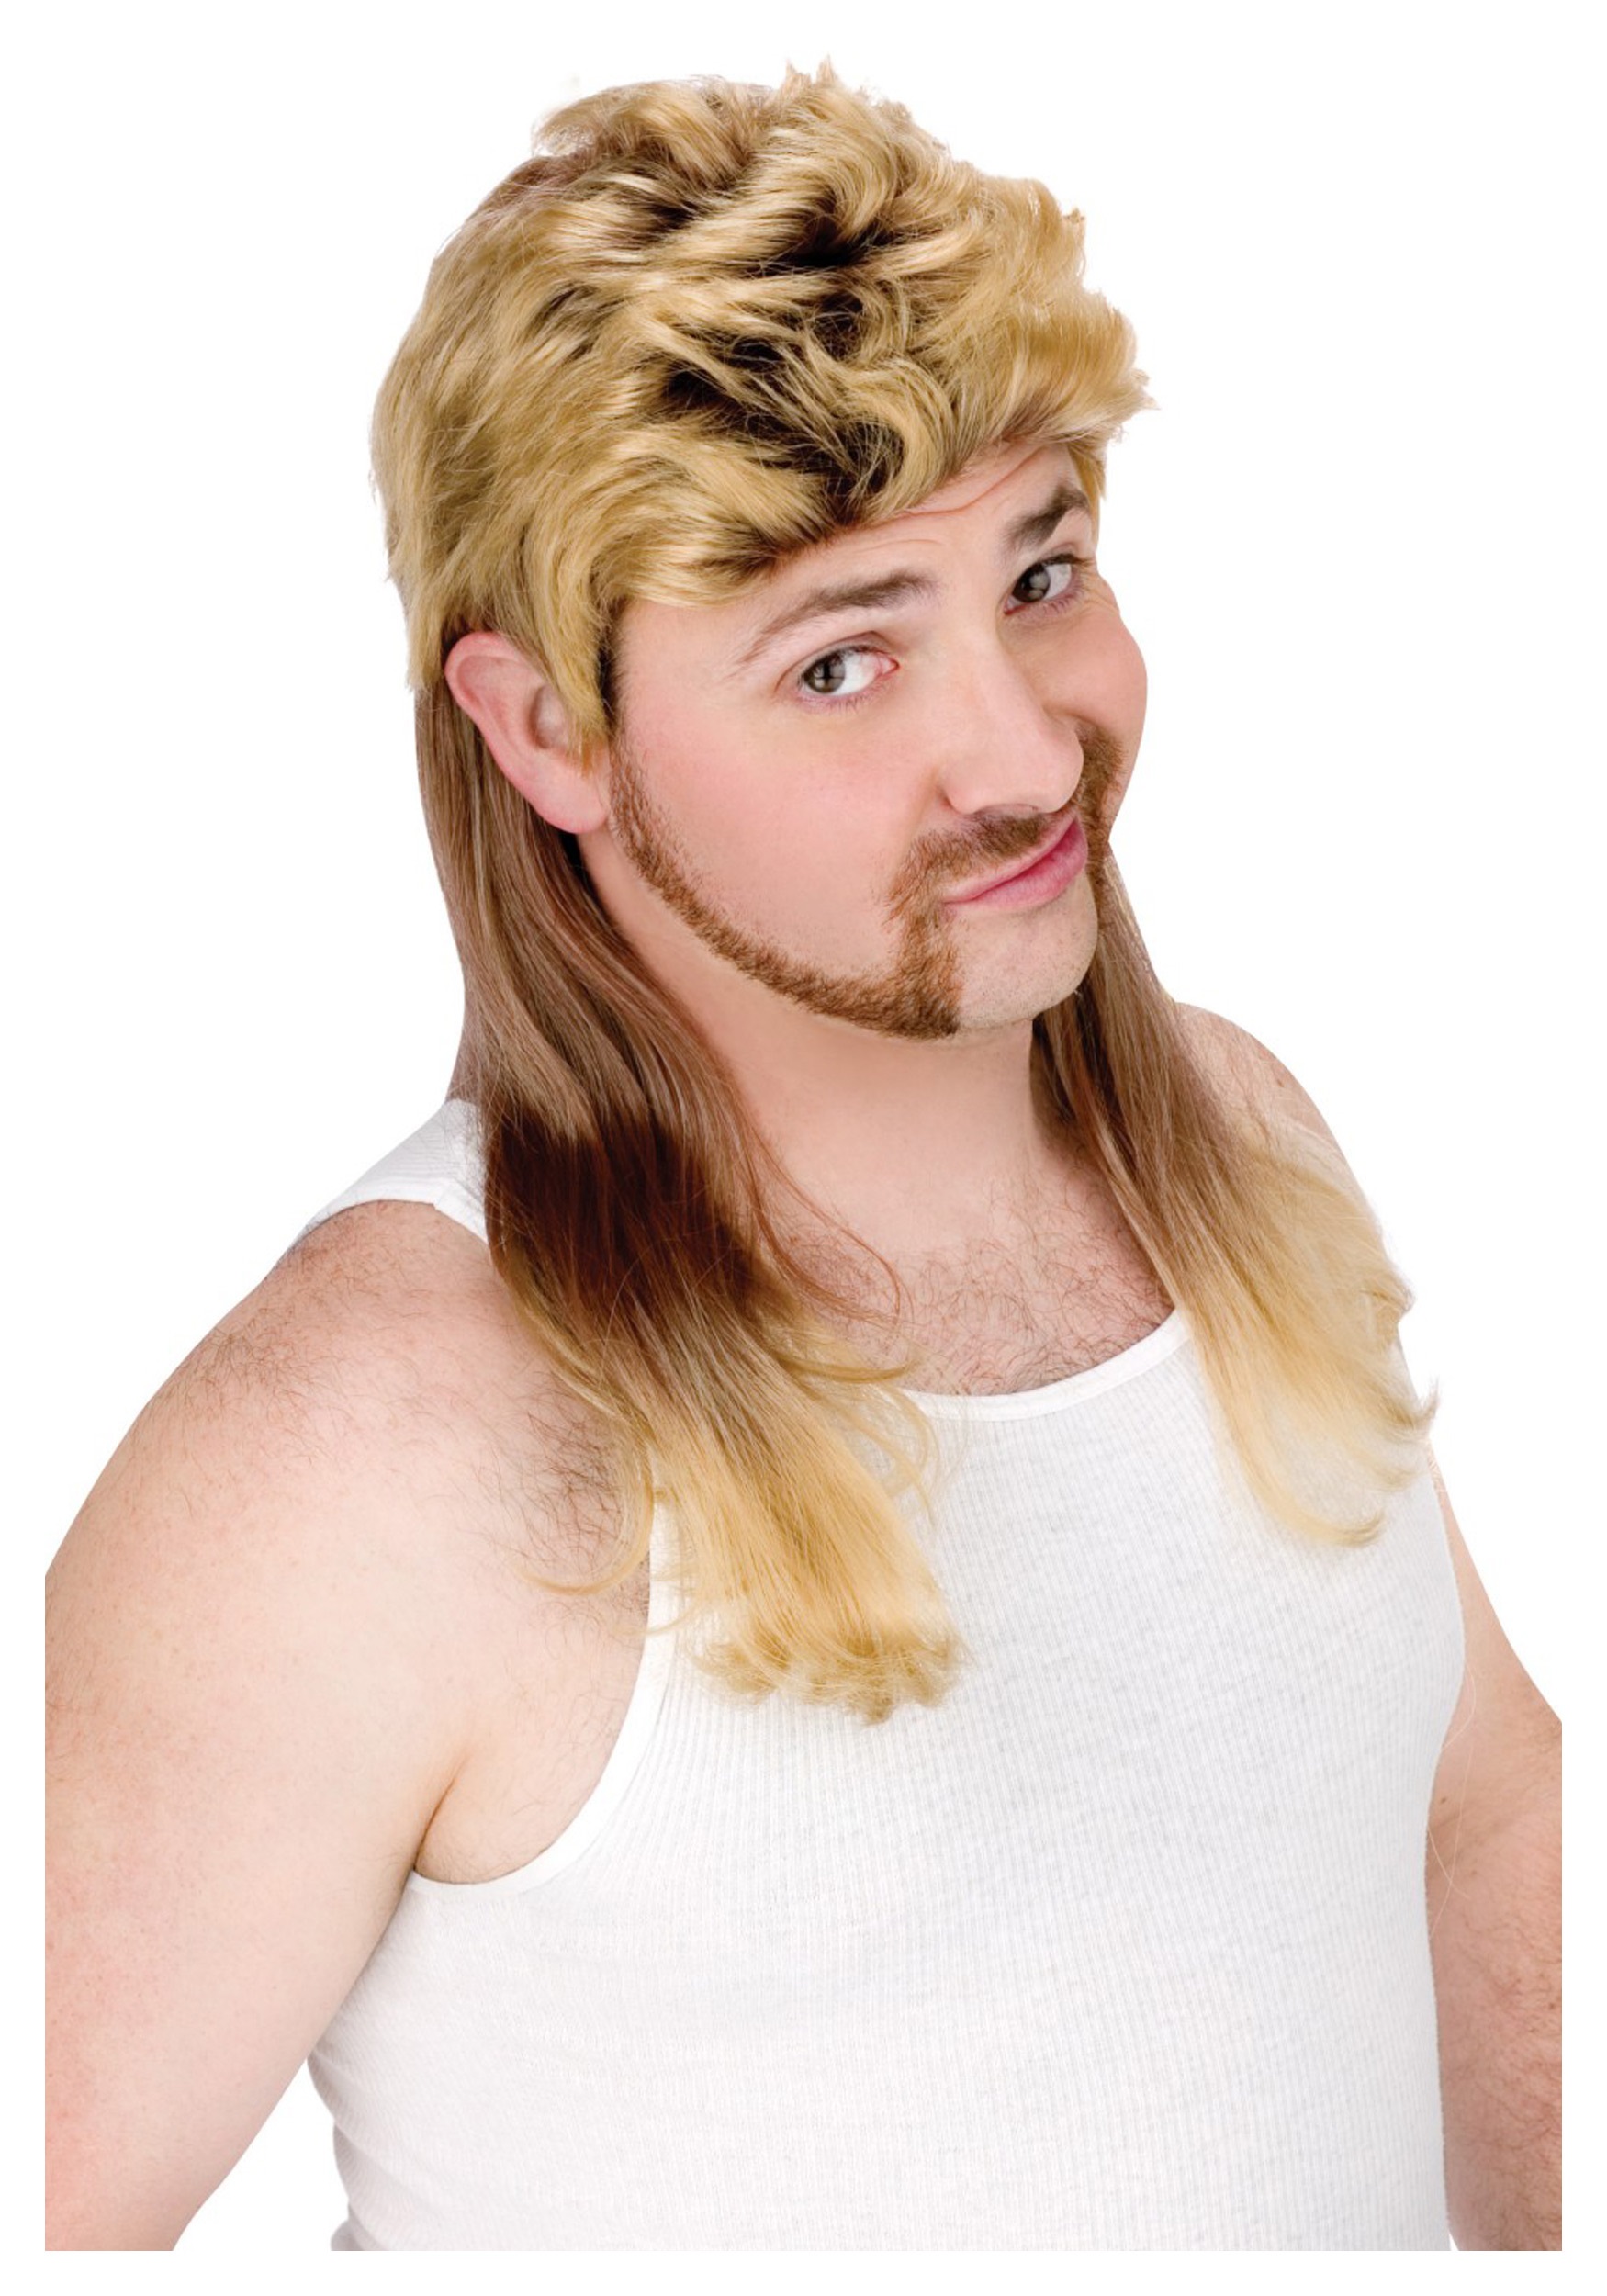 Blonde hillbilly Mullet Wig